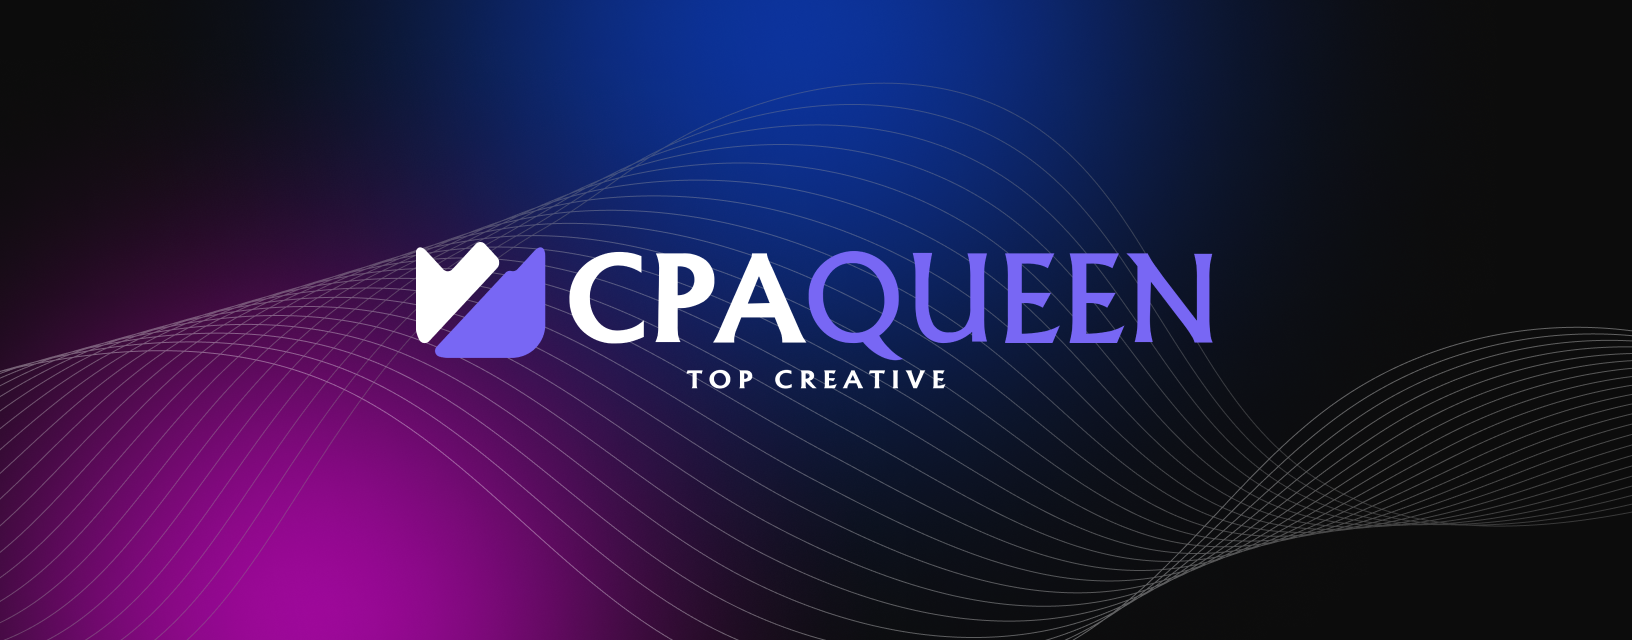 CPA Queen_desktop_en